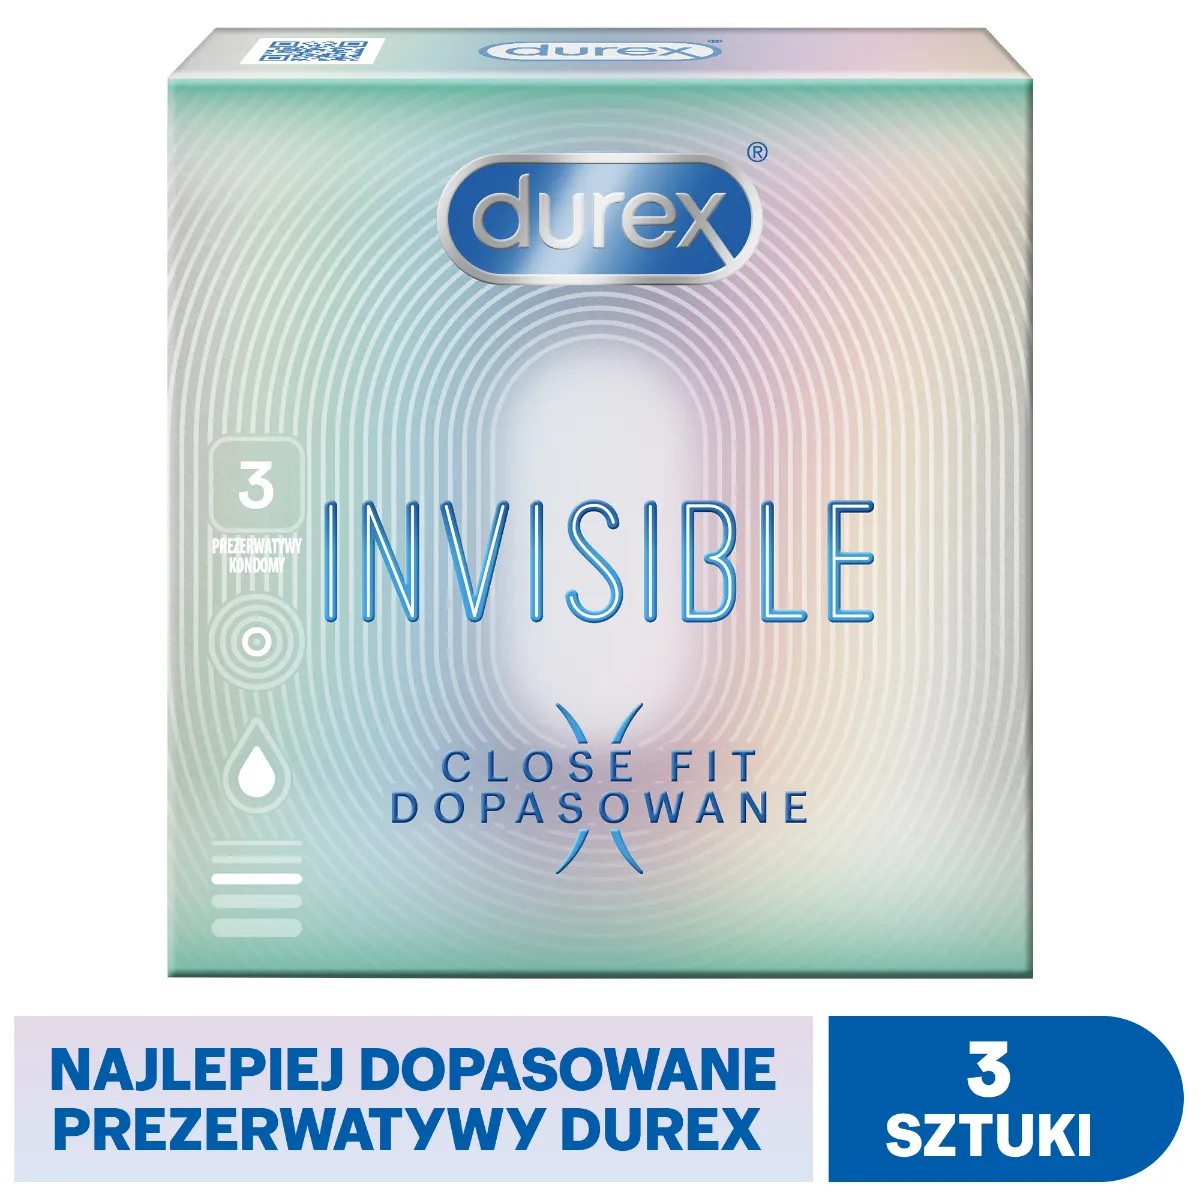 Durex Invisible Close Fit, prezerwatywy, 3 sztuki